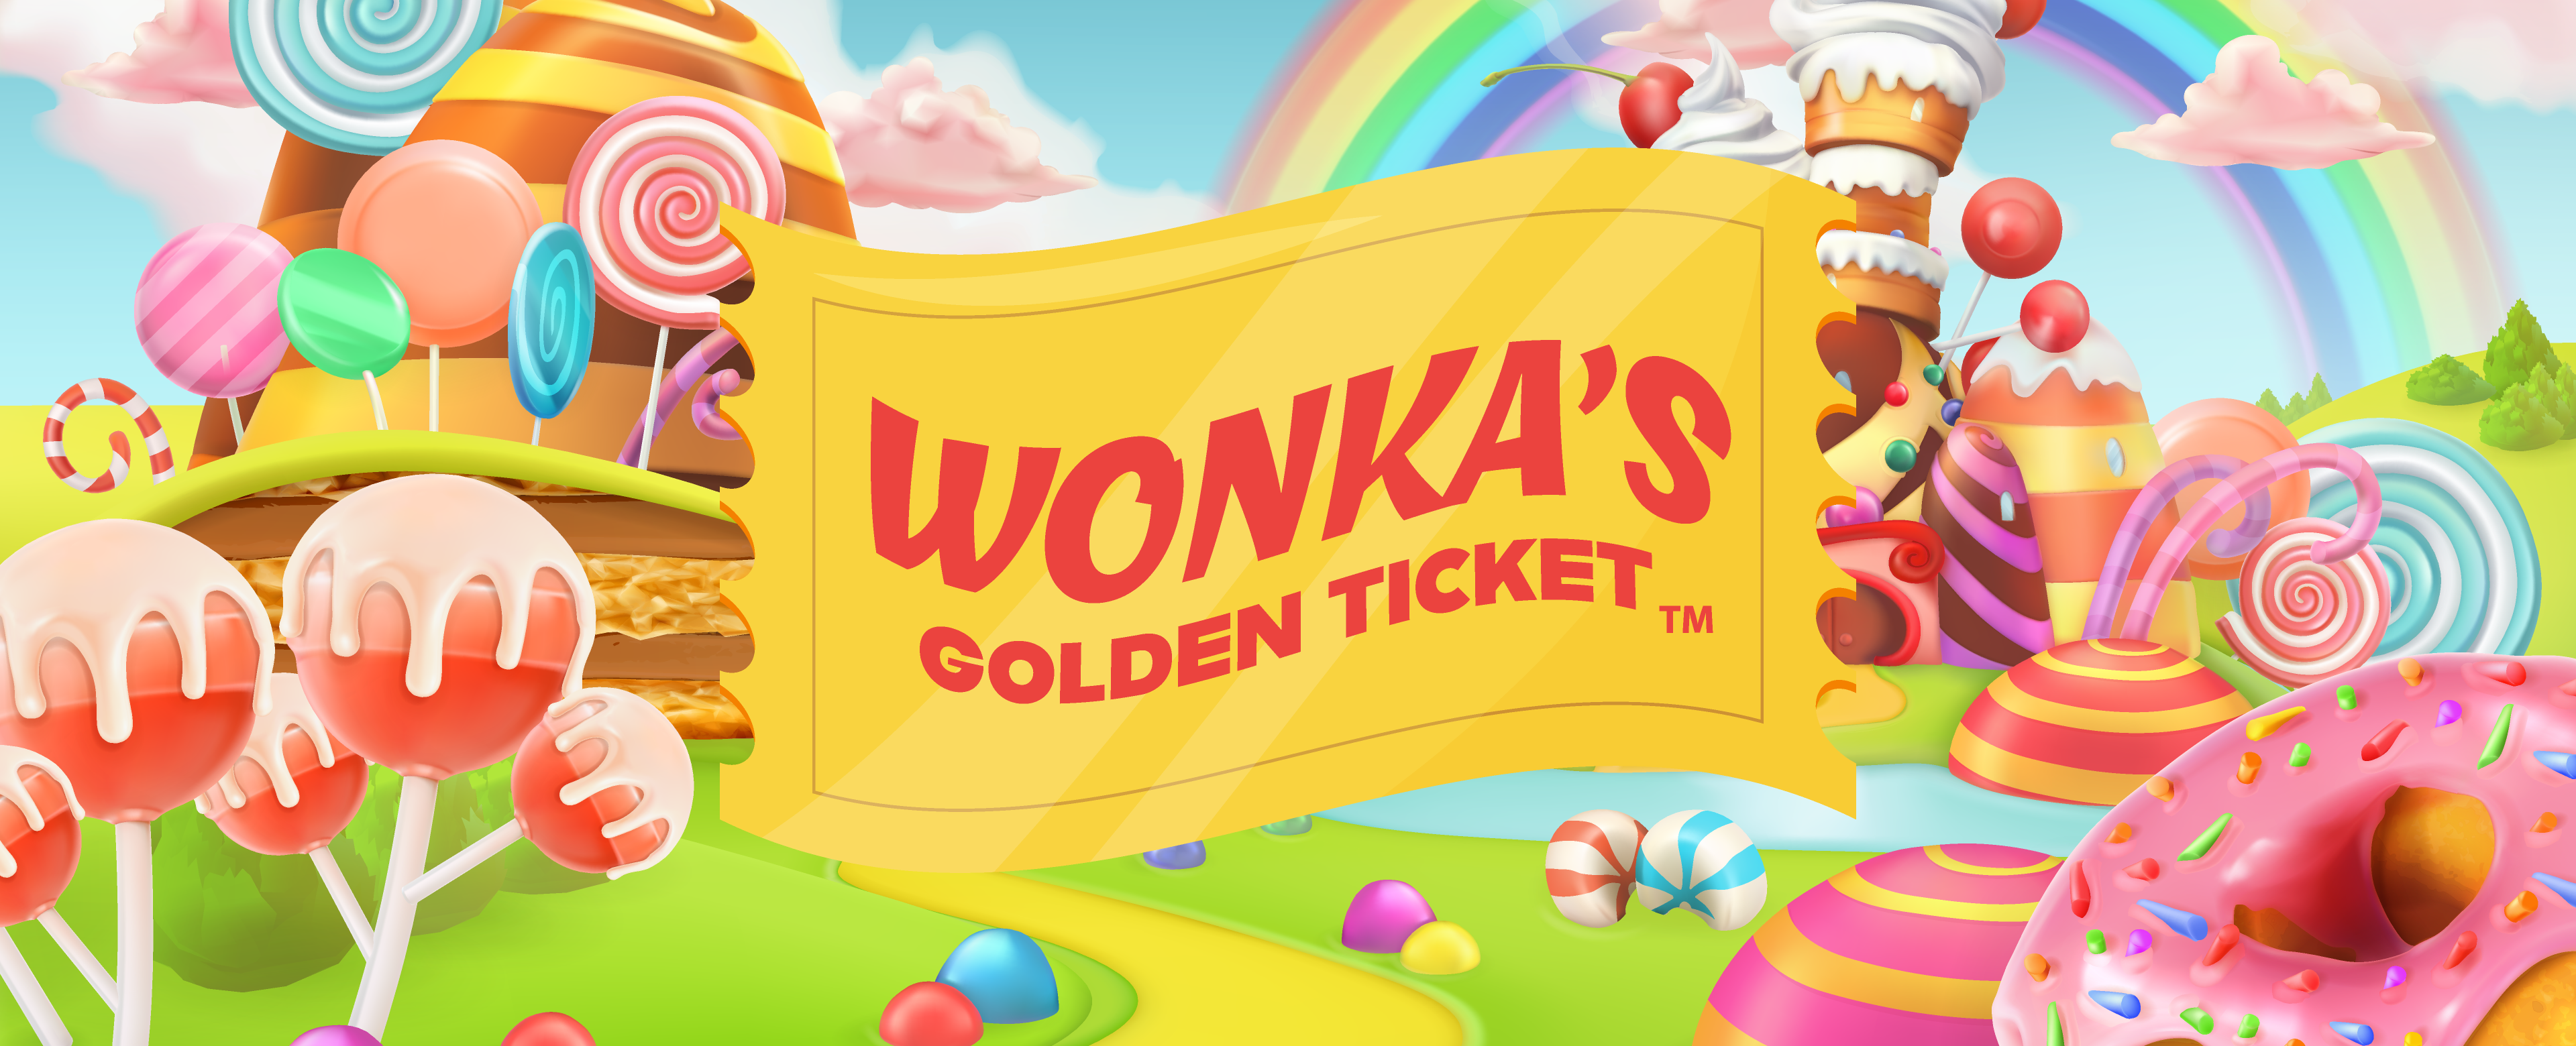 Walking in a Wonka Wonderland  Wonka Candy Carnival - Spokane Public  Library